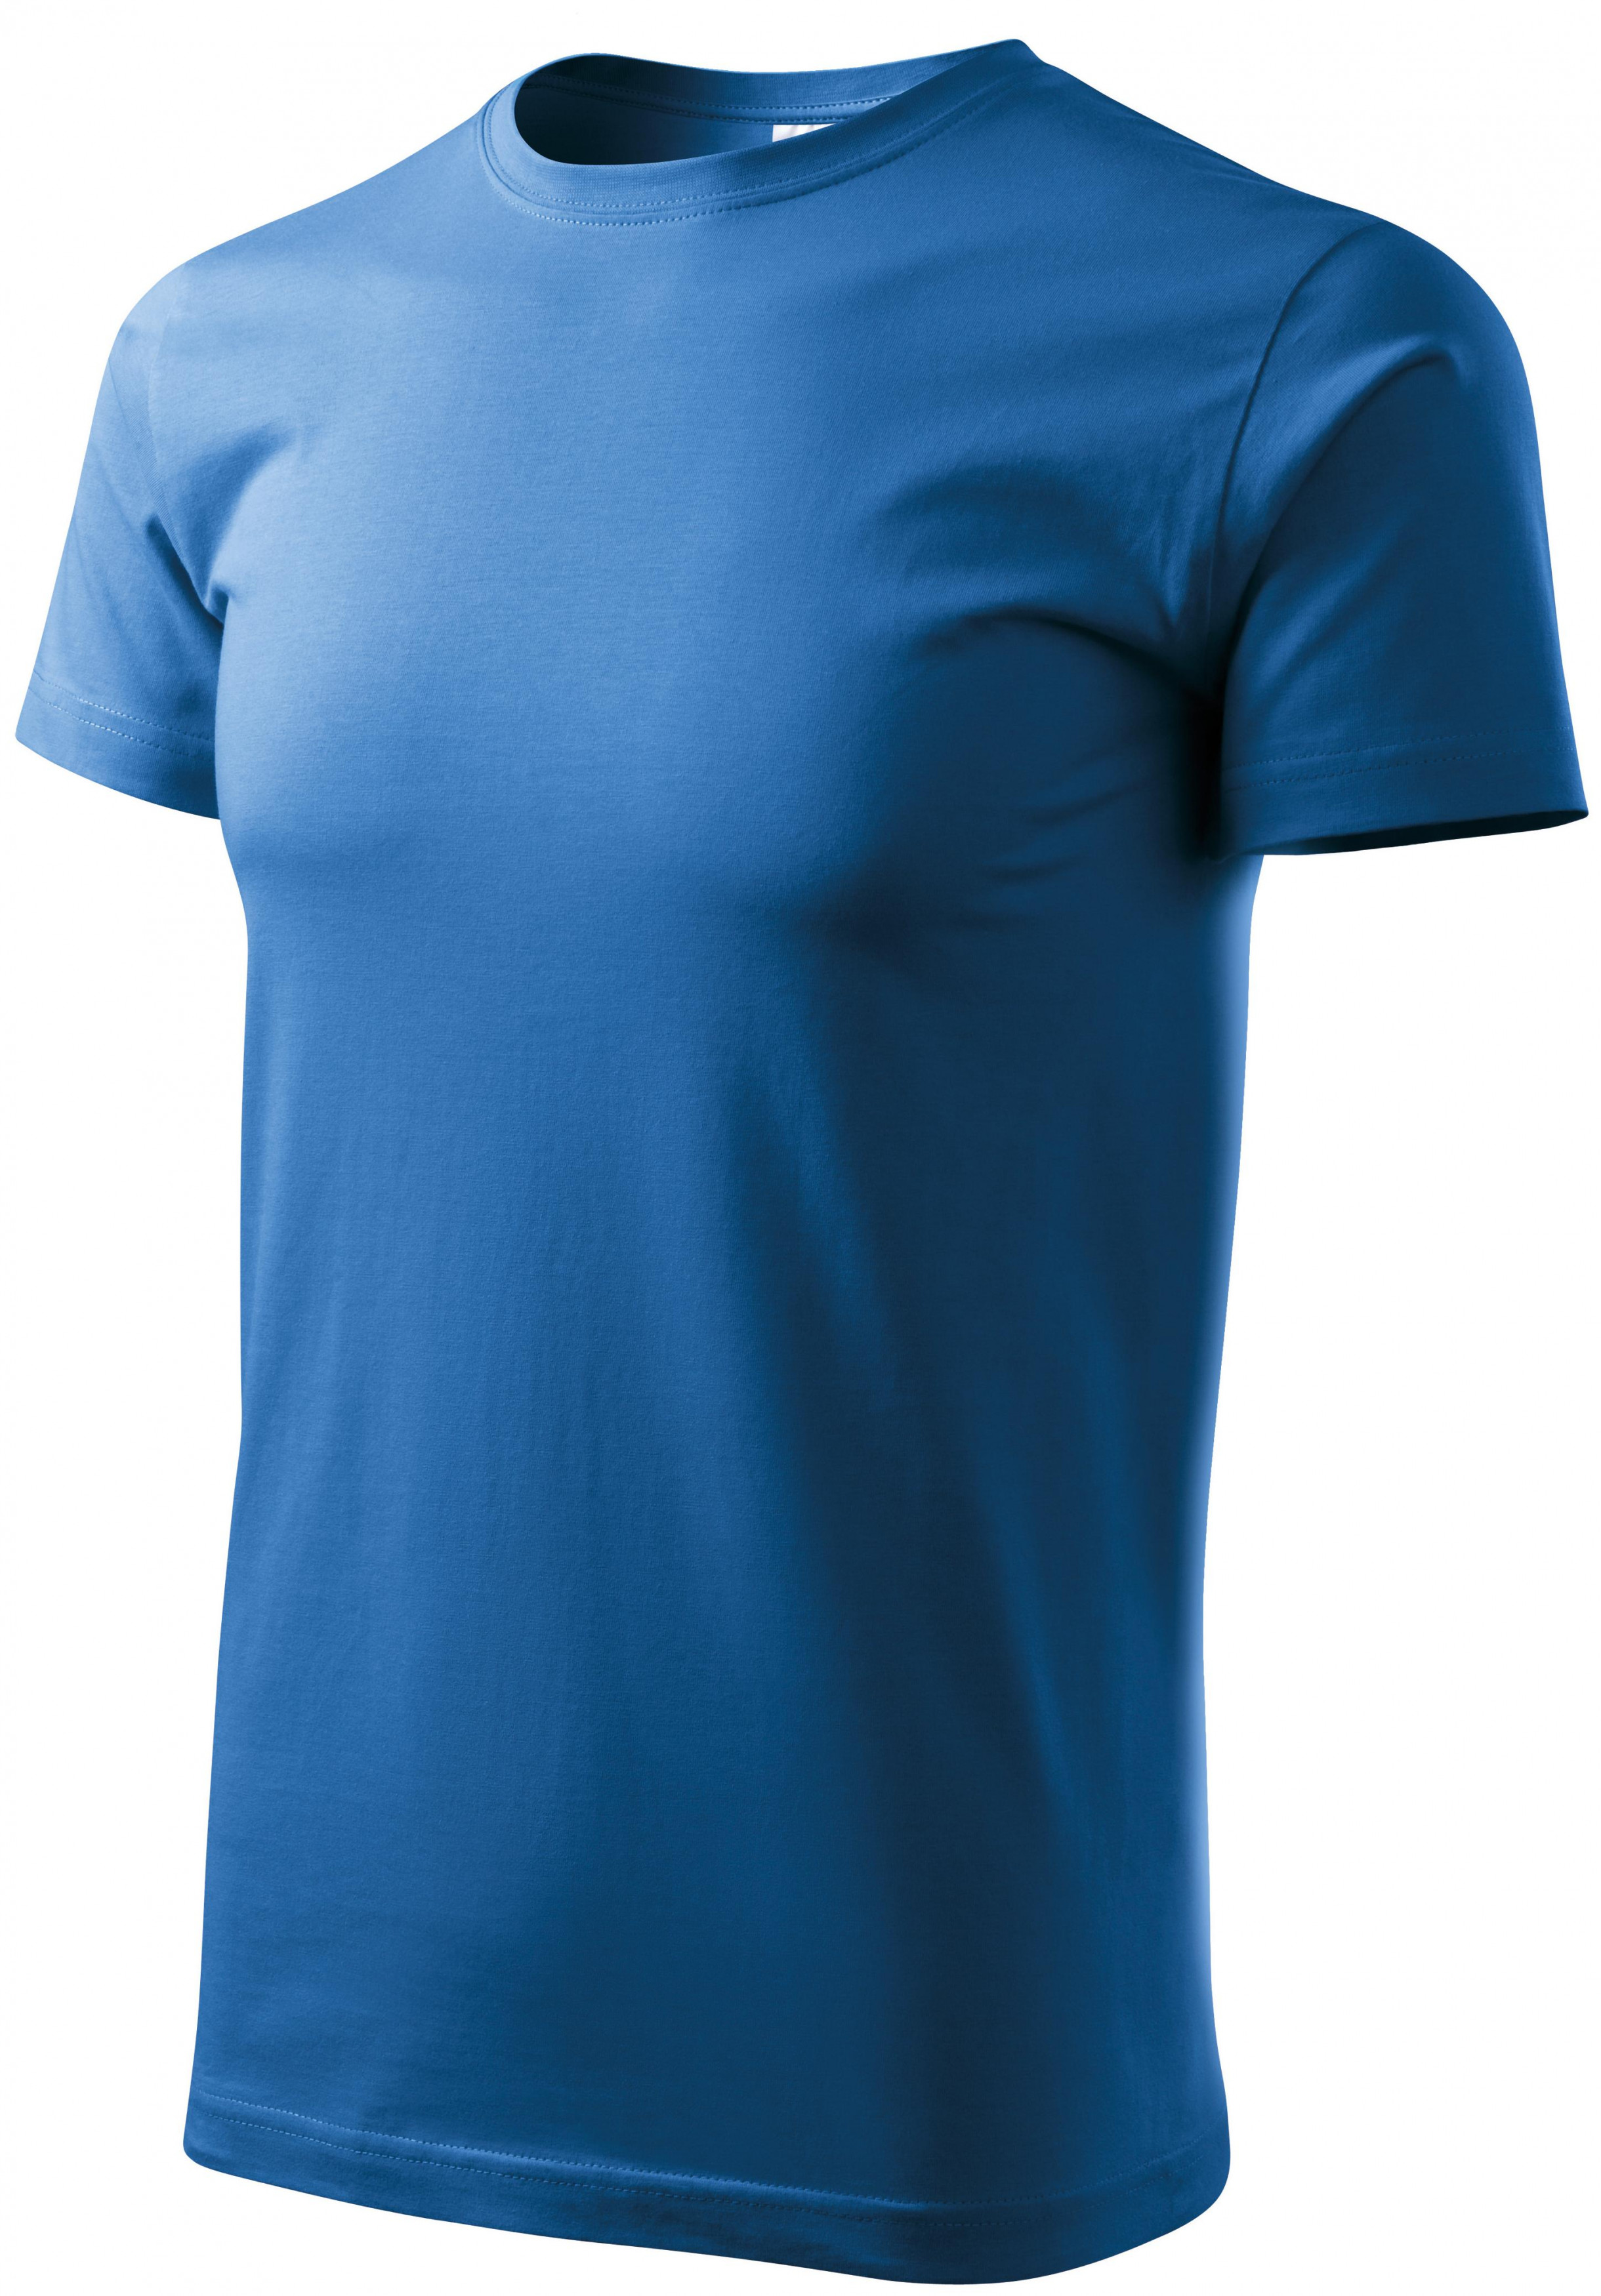 Unisex nagyobb súlyú póló, világoskék, 3XL